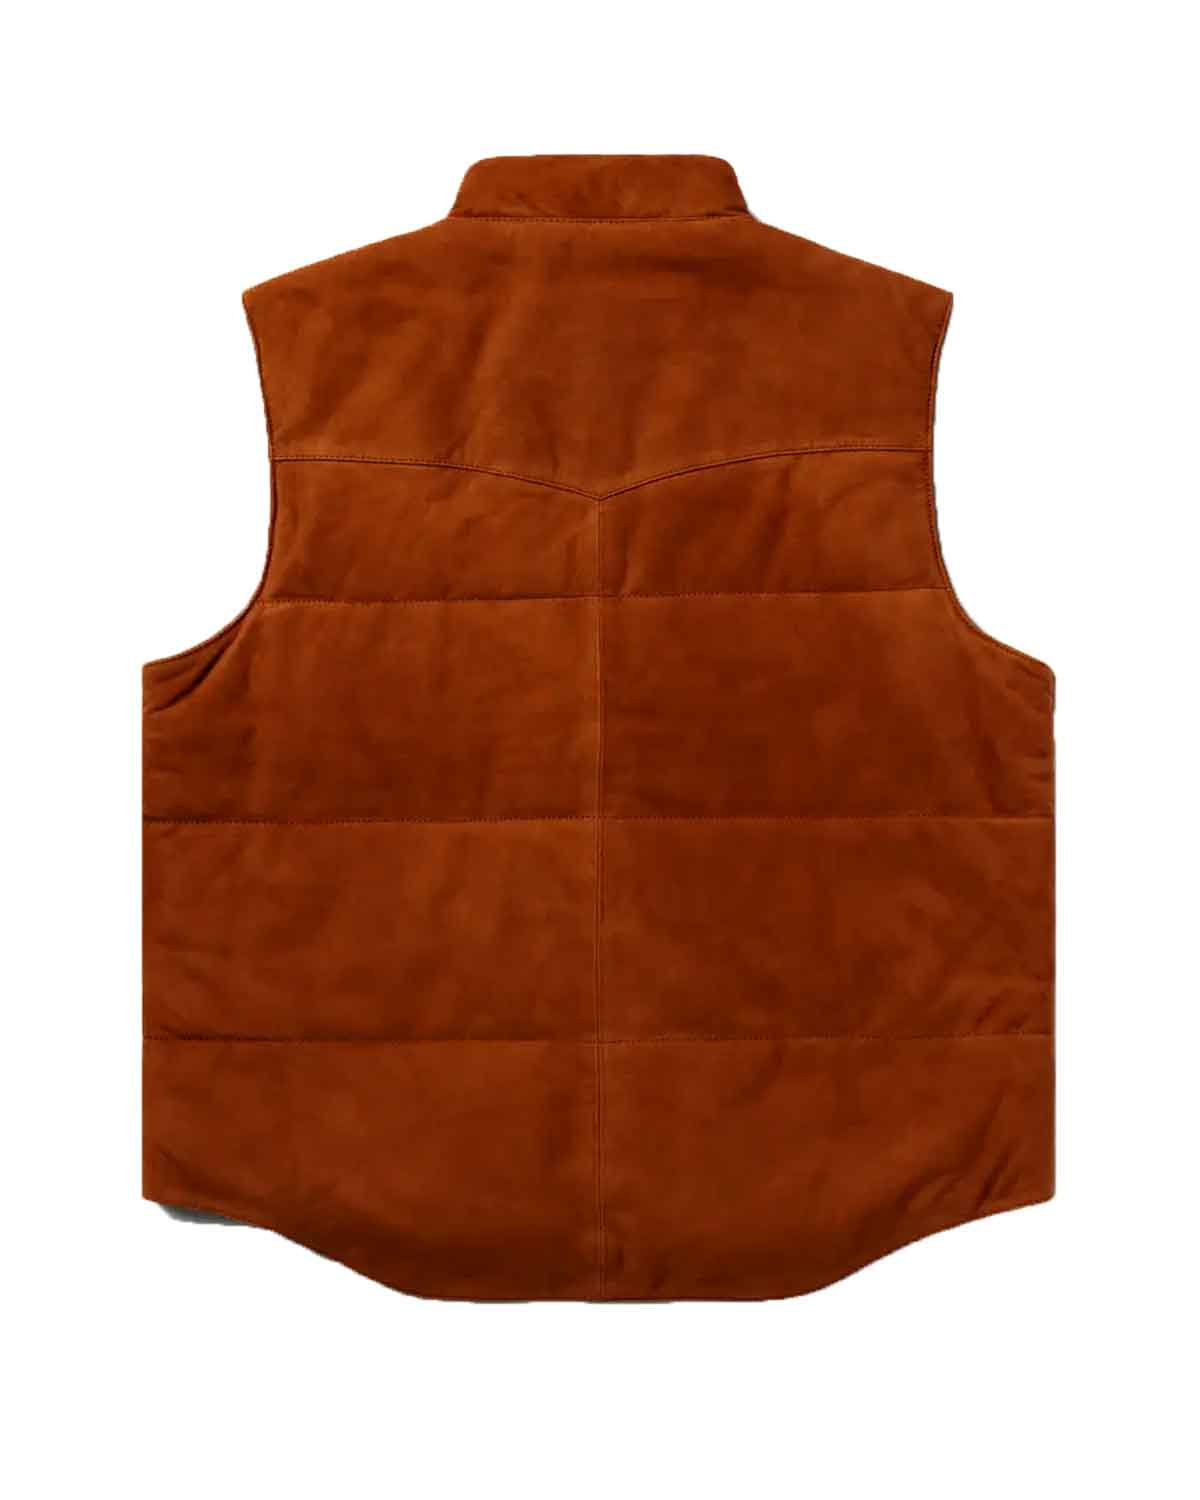 Mens Brown Western Design Suede Leather Vest | Elite Jacket